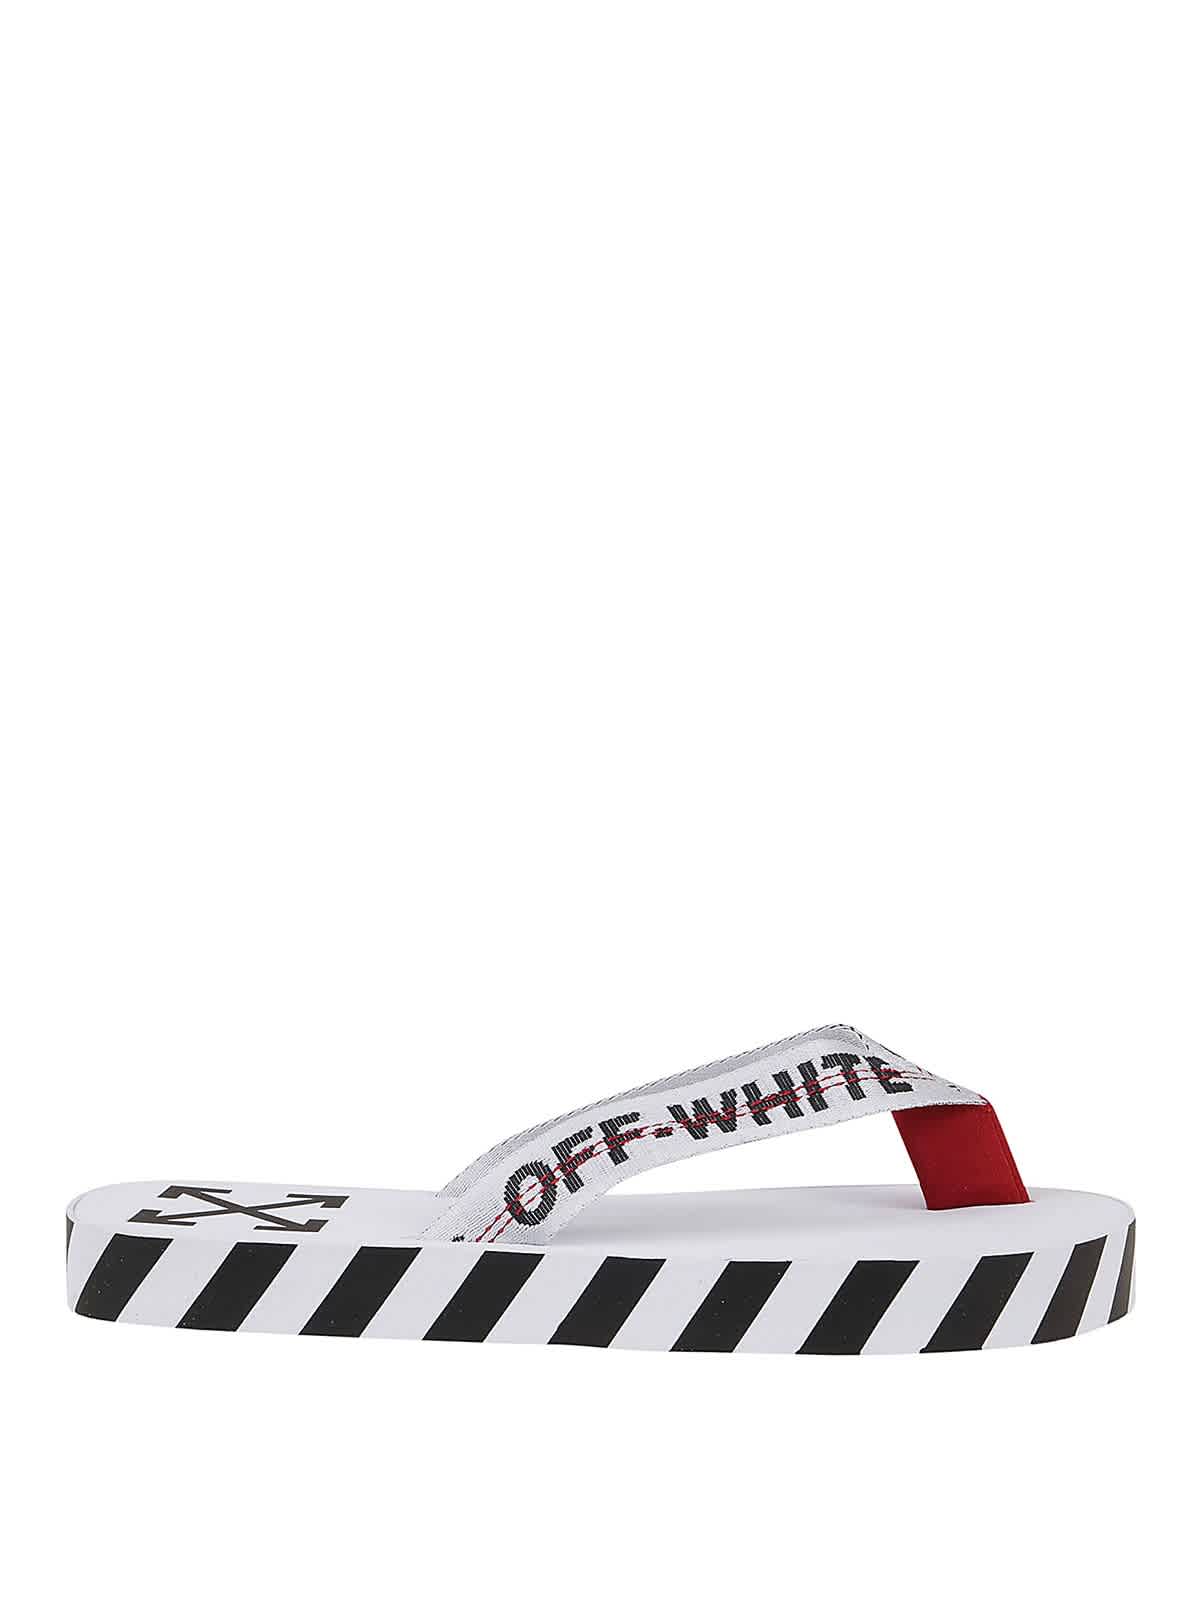 white flip flops walmart